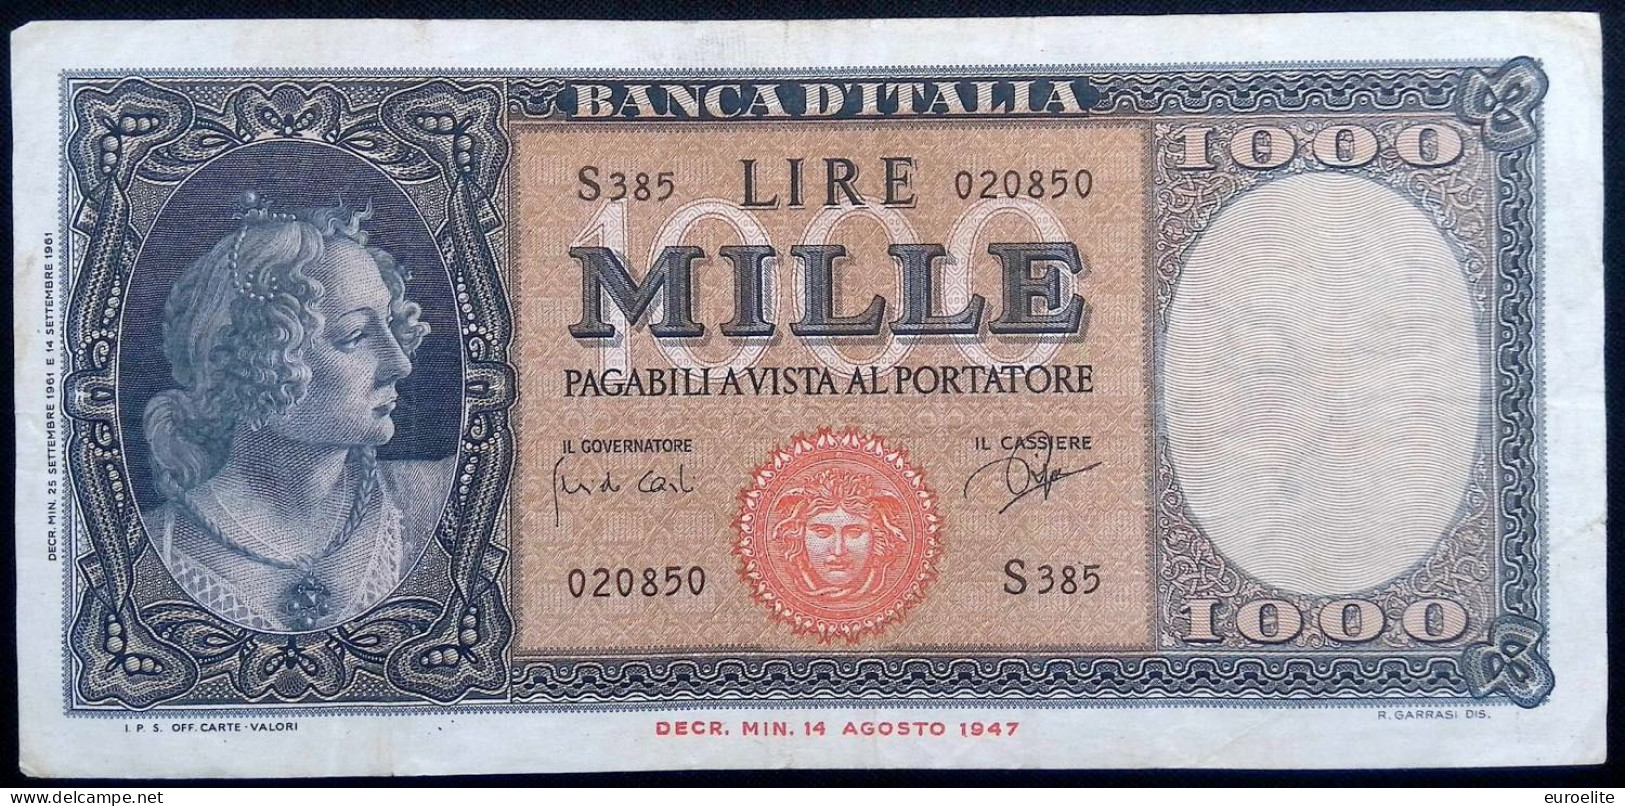 Repubblica Italiana - 1000 Lire Italia (Medusa) - 2000 Lire